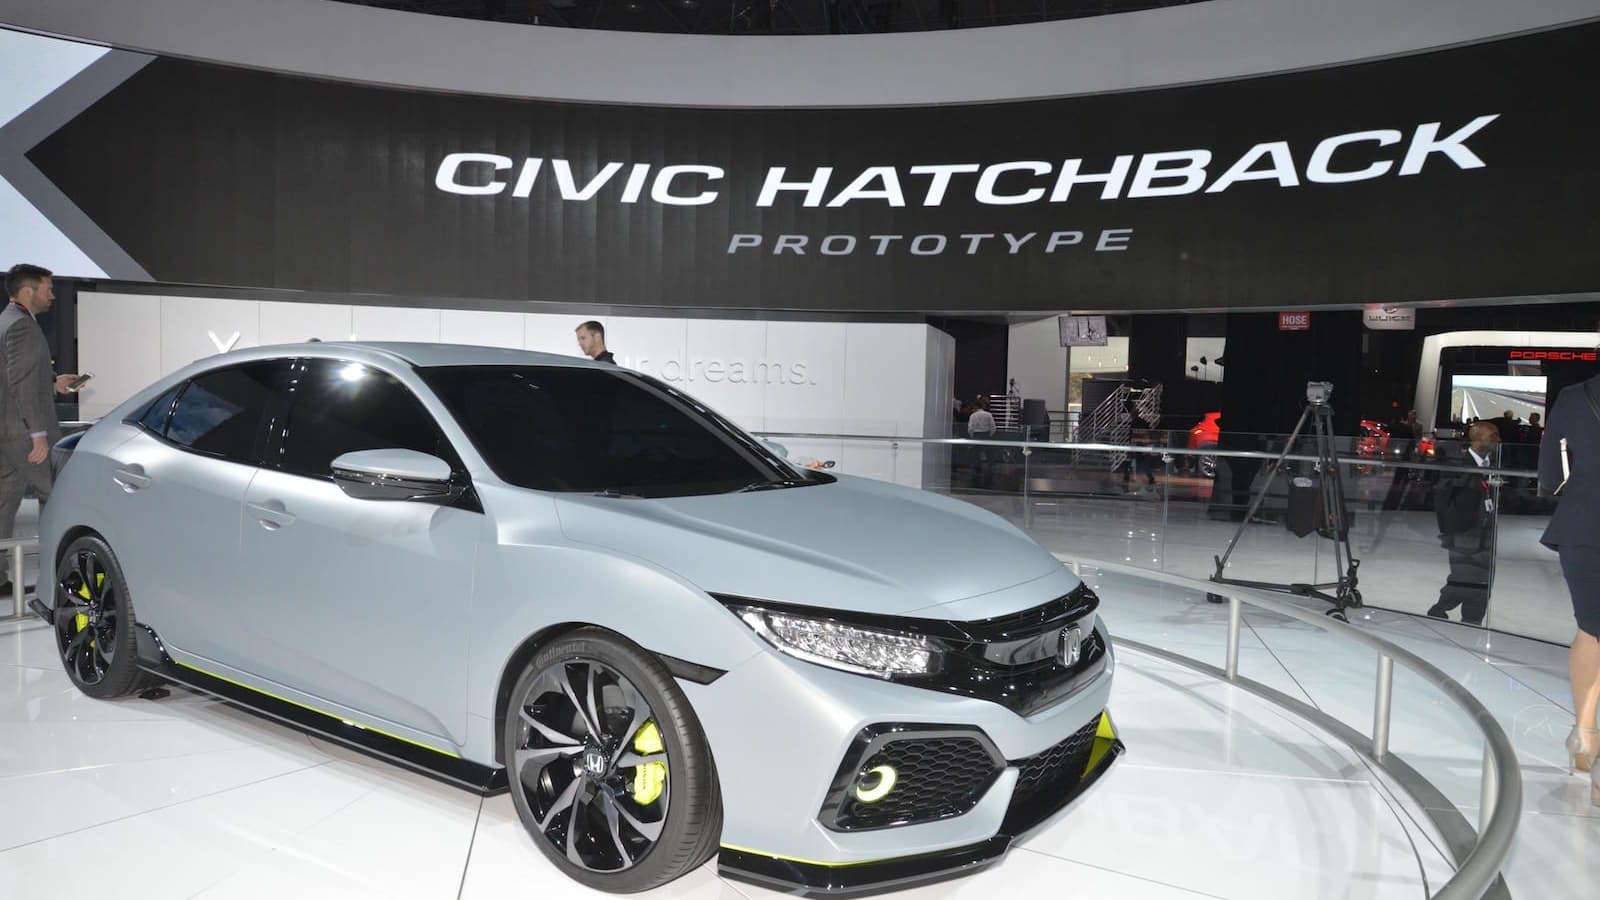 2017 Honda Civic Hatchback prototype, 2016 New York Auto Show